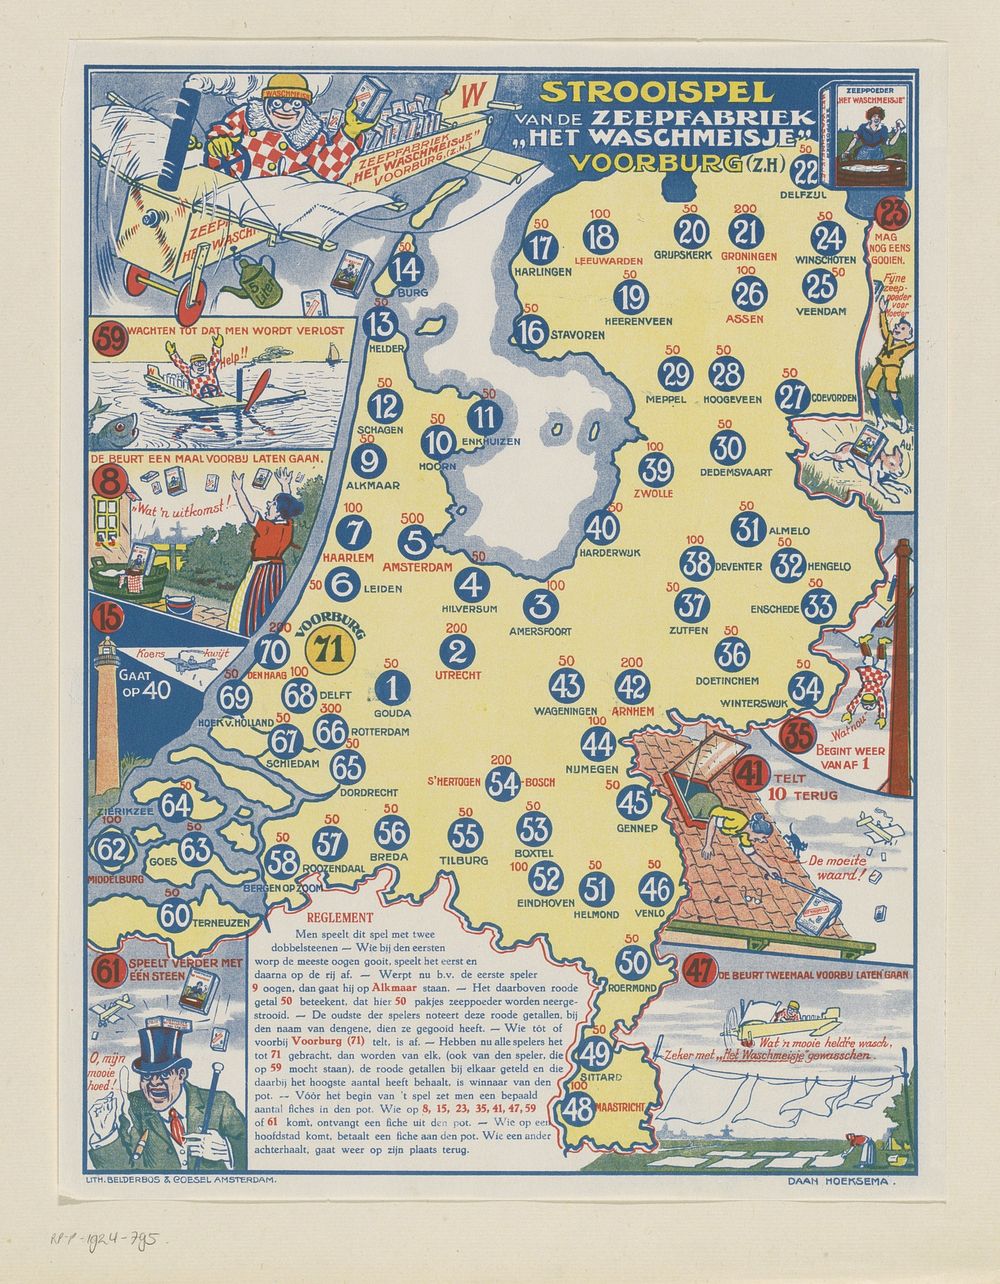 Strooispel van de zeepfabriek "het waschmeisje" Voorburg (1889 - 1924) by Belderbos en Coesel and Daan Hoeksema